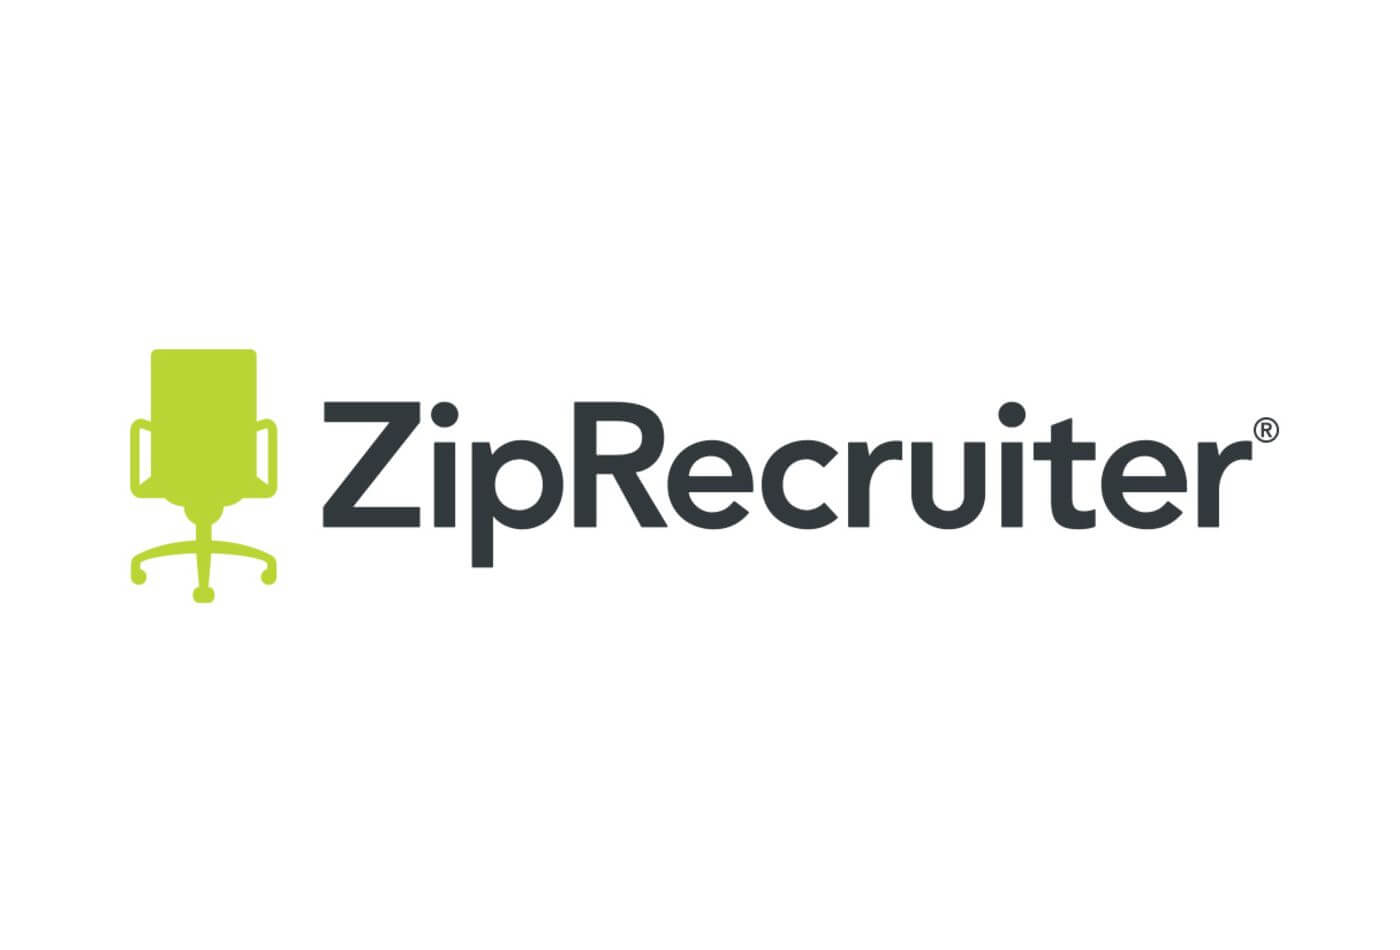 Zip Recruiter job board, Zip Recruiter for recruiters, Zip Recruiter job posting, How to post a job on Zip Recruiter, Zip Recruiter job board, Zip Recruiter ATS, Zip Recruiter for employers, Zip Recruiter recruiter, how to hire, what is Zip Recruiter, post job free